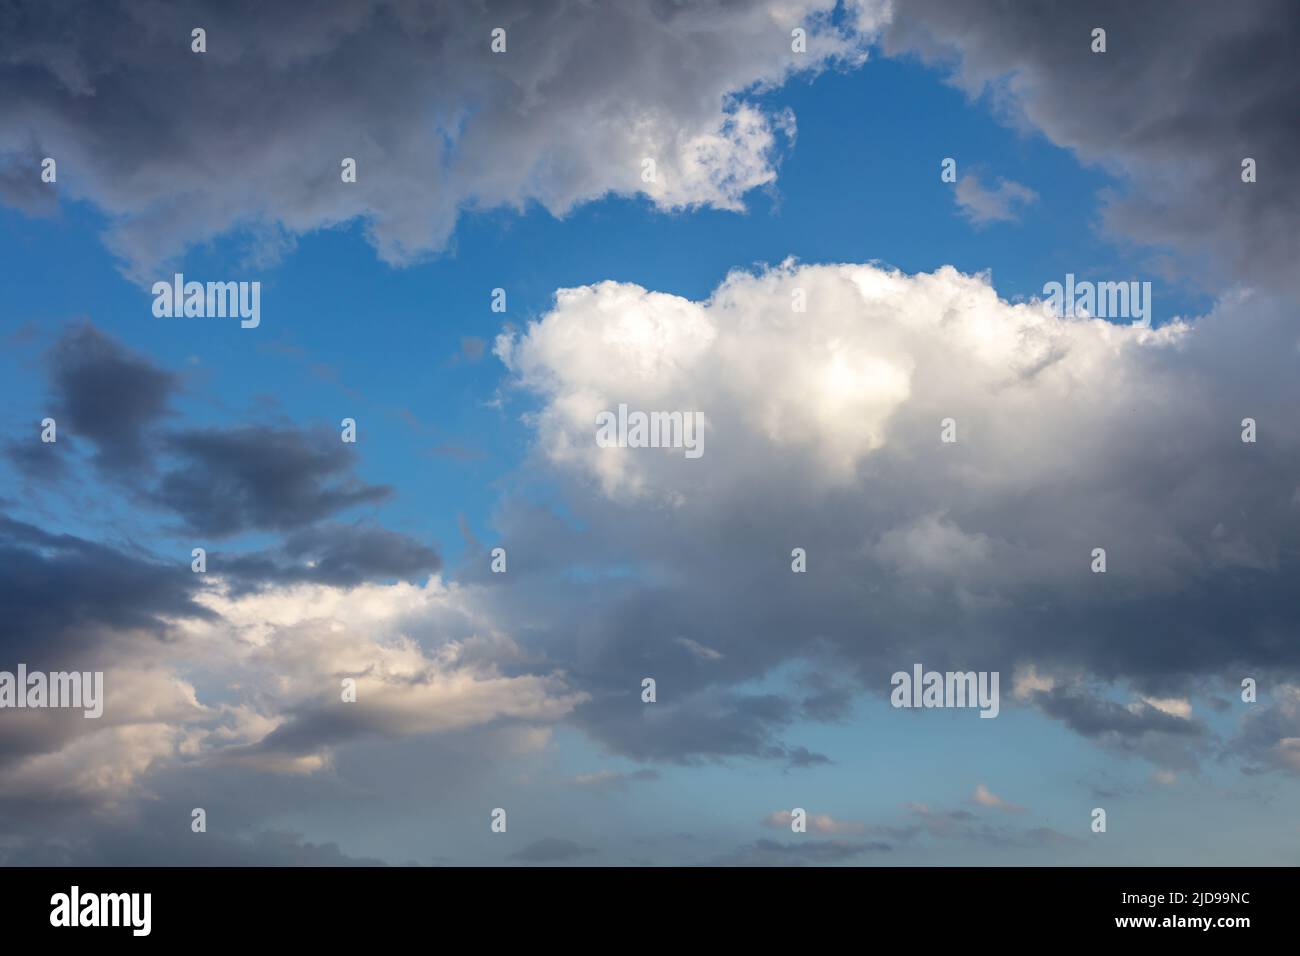 Regenwolke auf blauem Himmel Hintergrund. Flauschige Cumulus-Wolkenlandschaft in weißer und grauer Schattierung. Wetter, Meteorologie Konzept Stockfoto